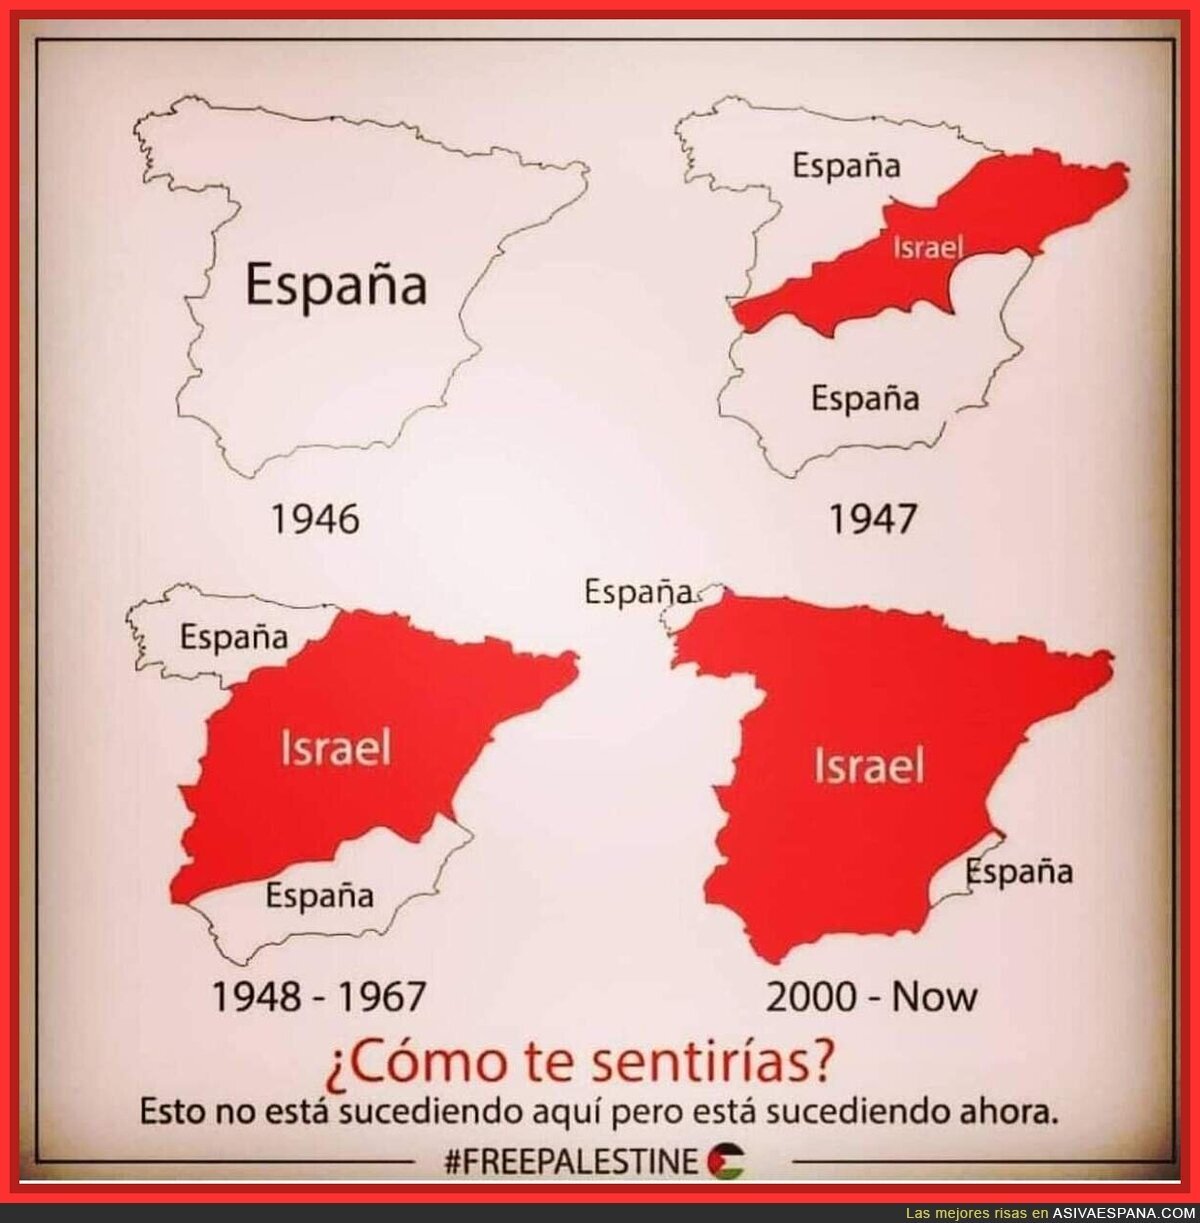 Aqui Israel defendiendose de España